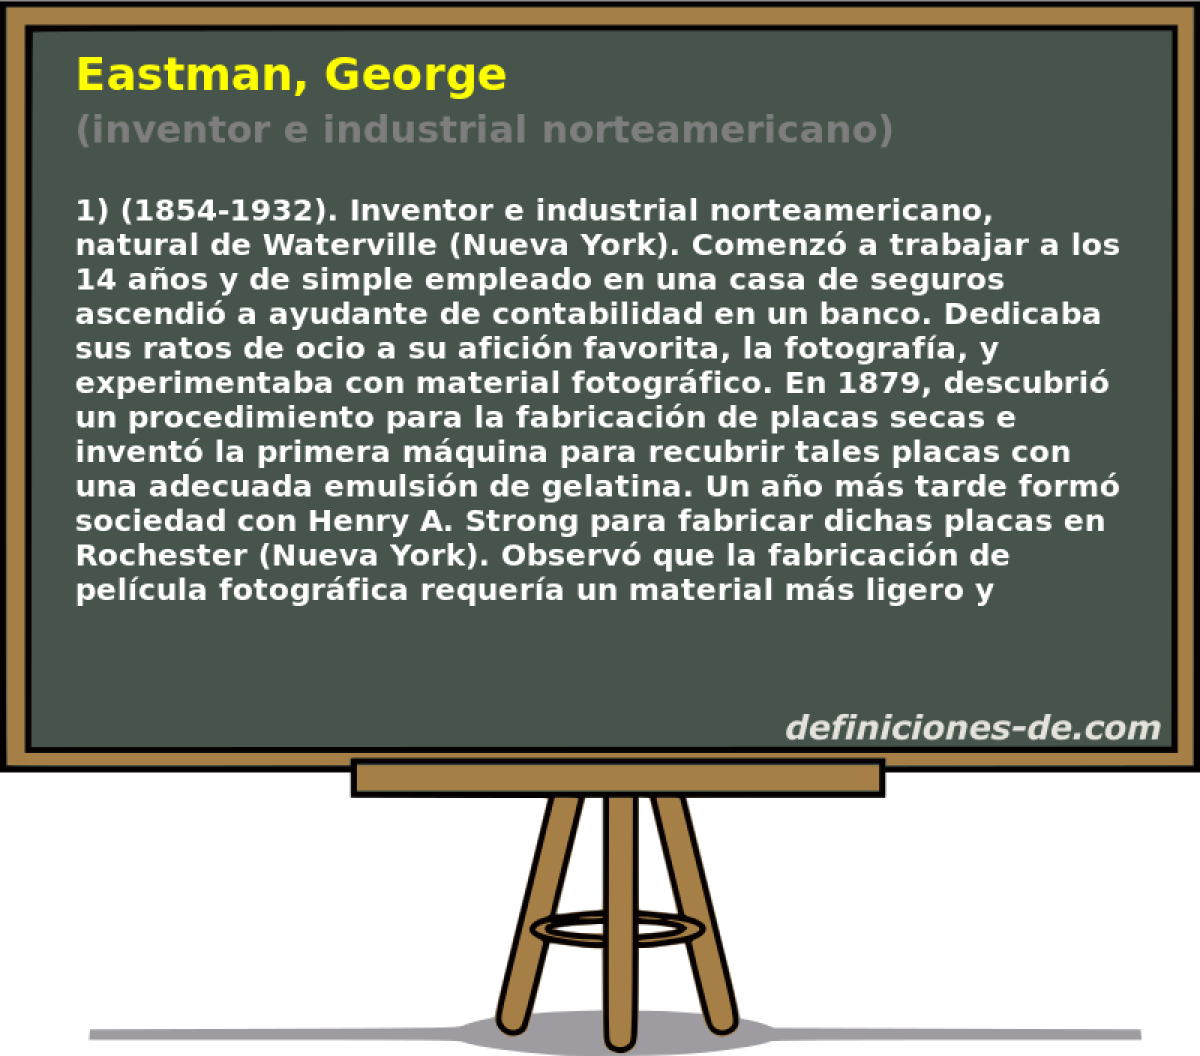 Eastman, George (inventor e industrial norteamericano)